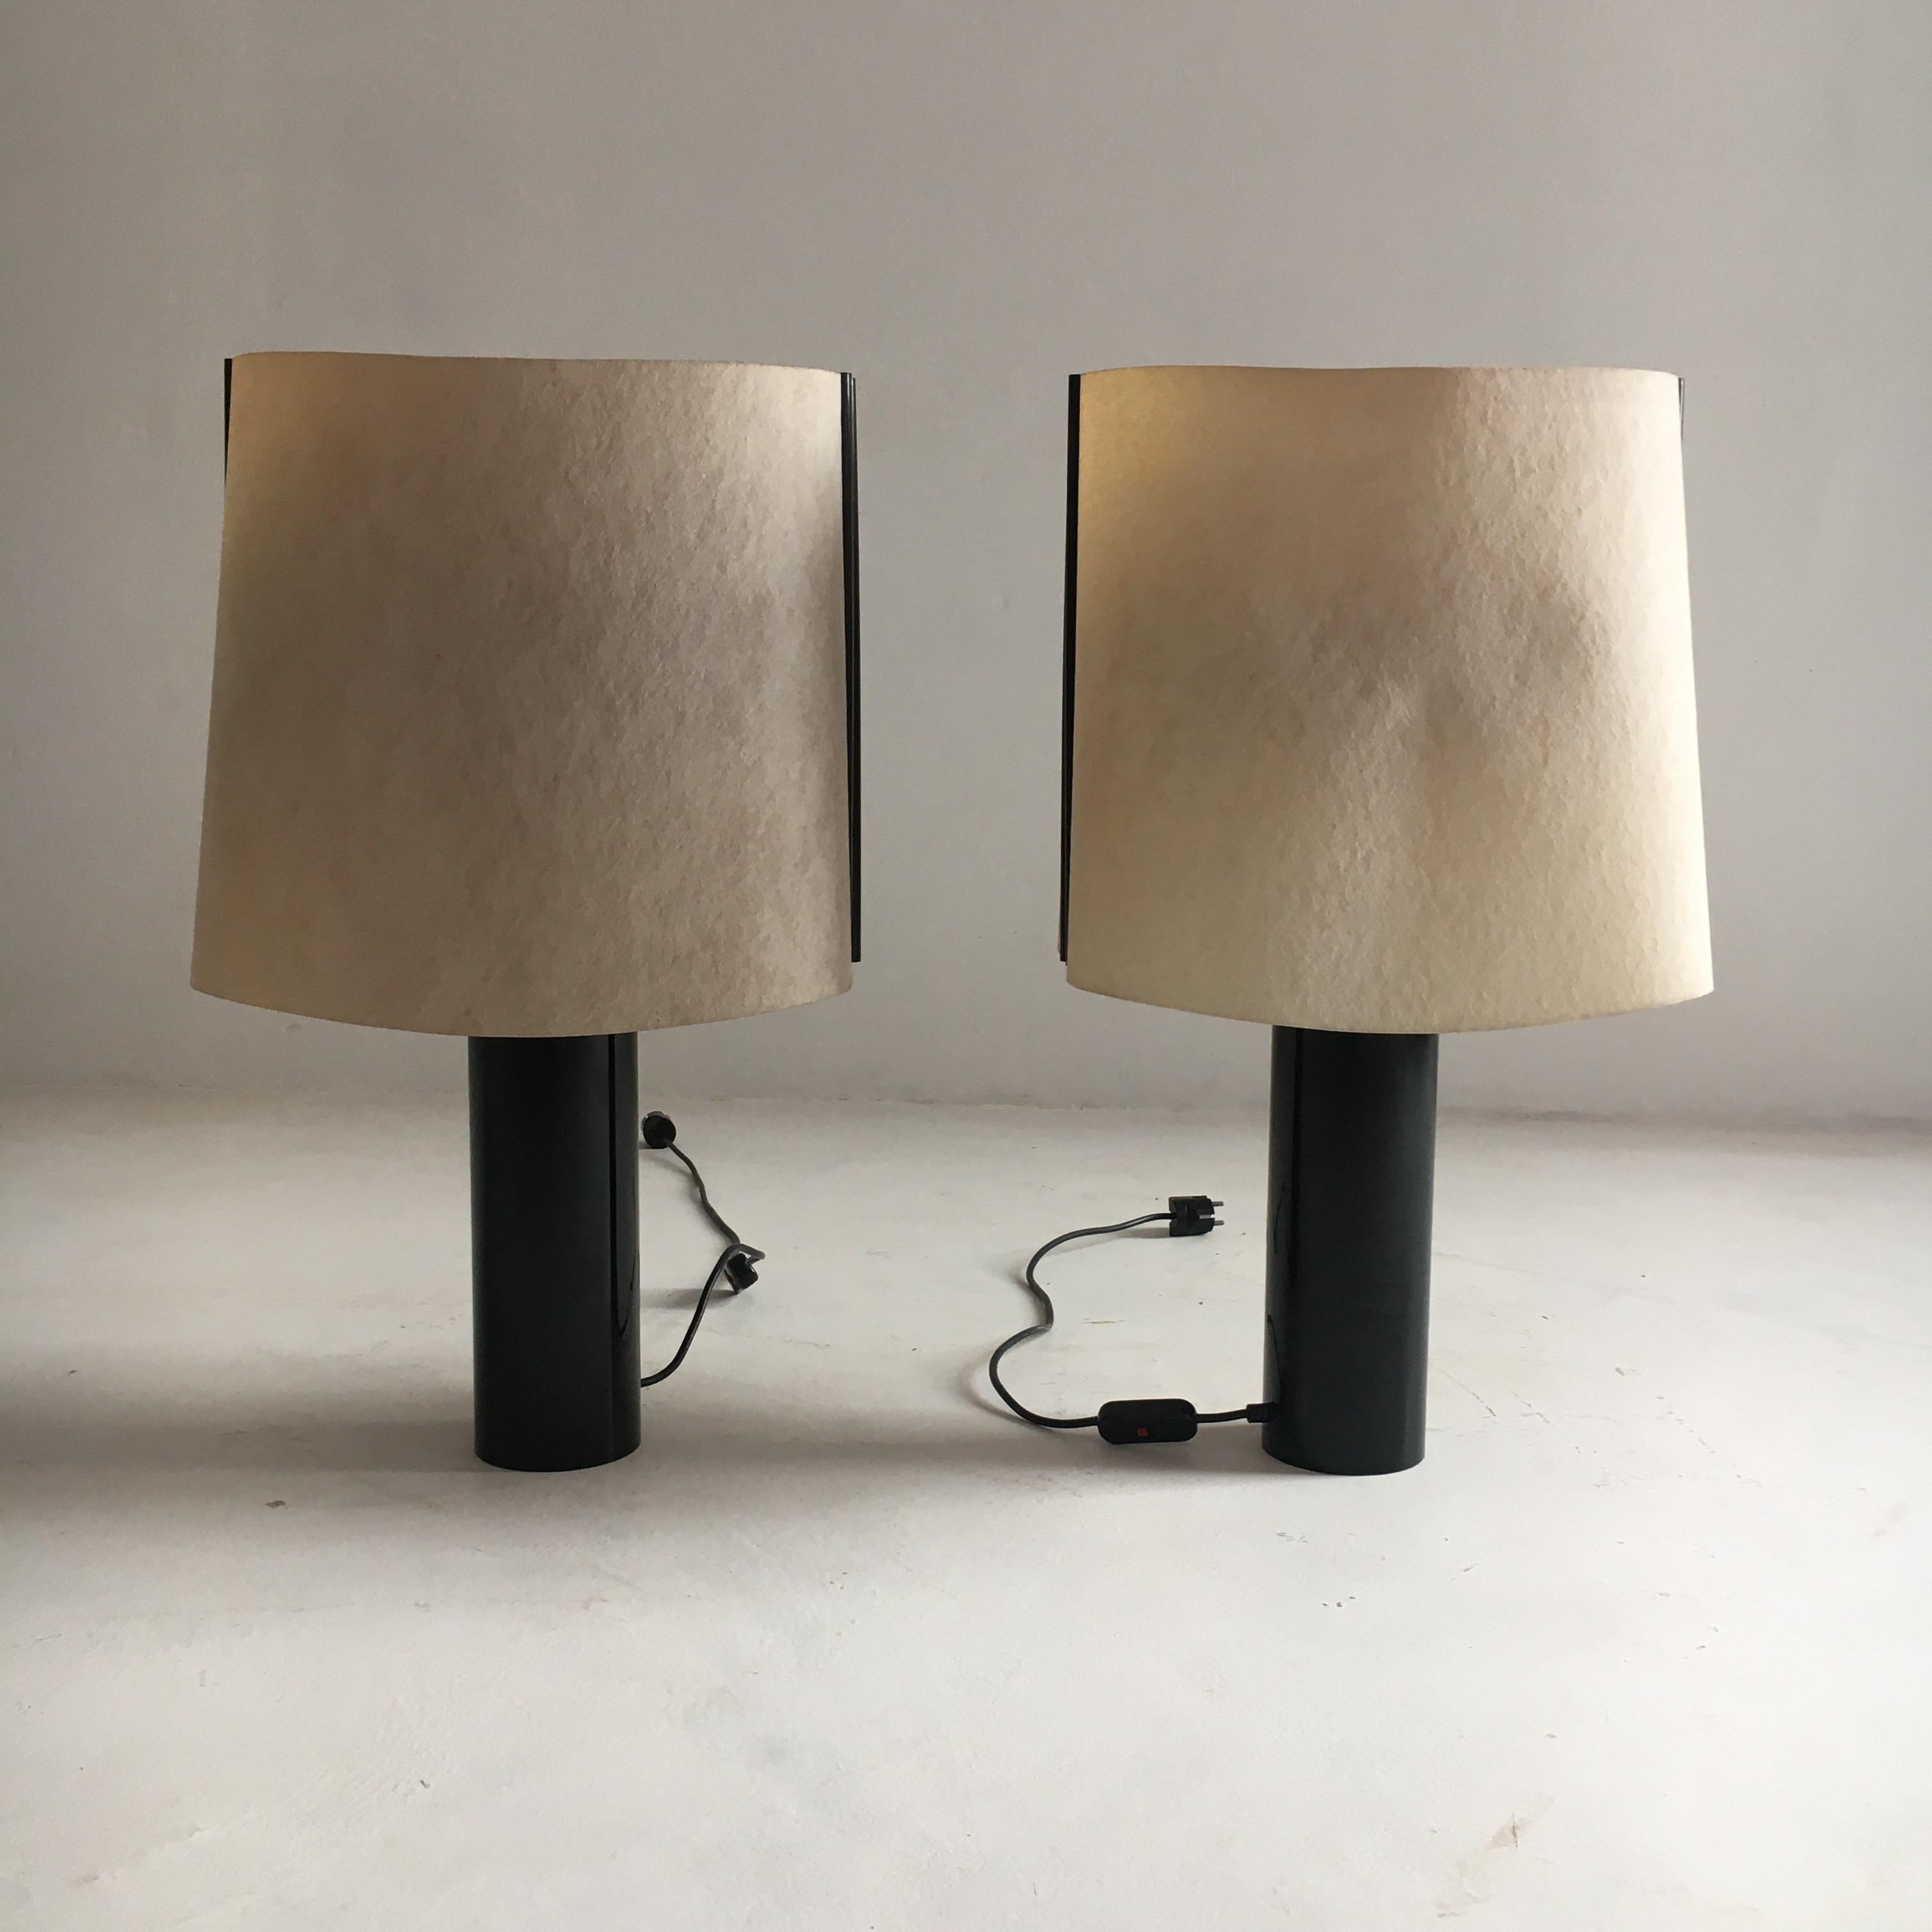 Stilnovo pair of table lamps model Paralume, Italy, 1970. Signed Stilnovo.